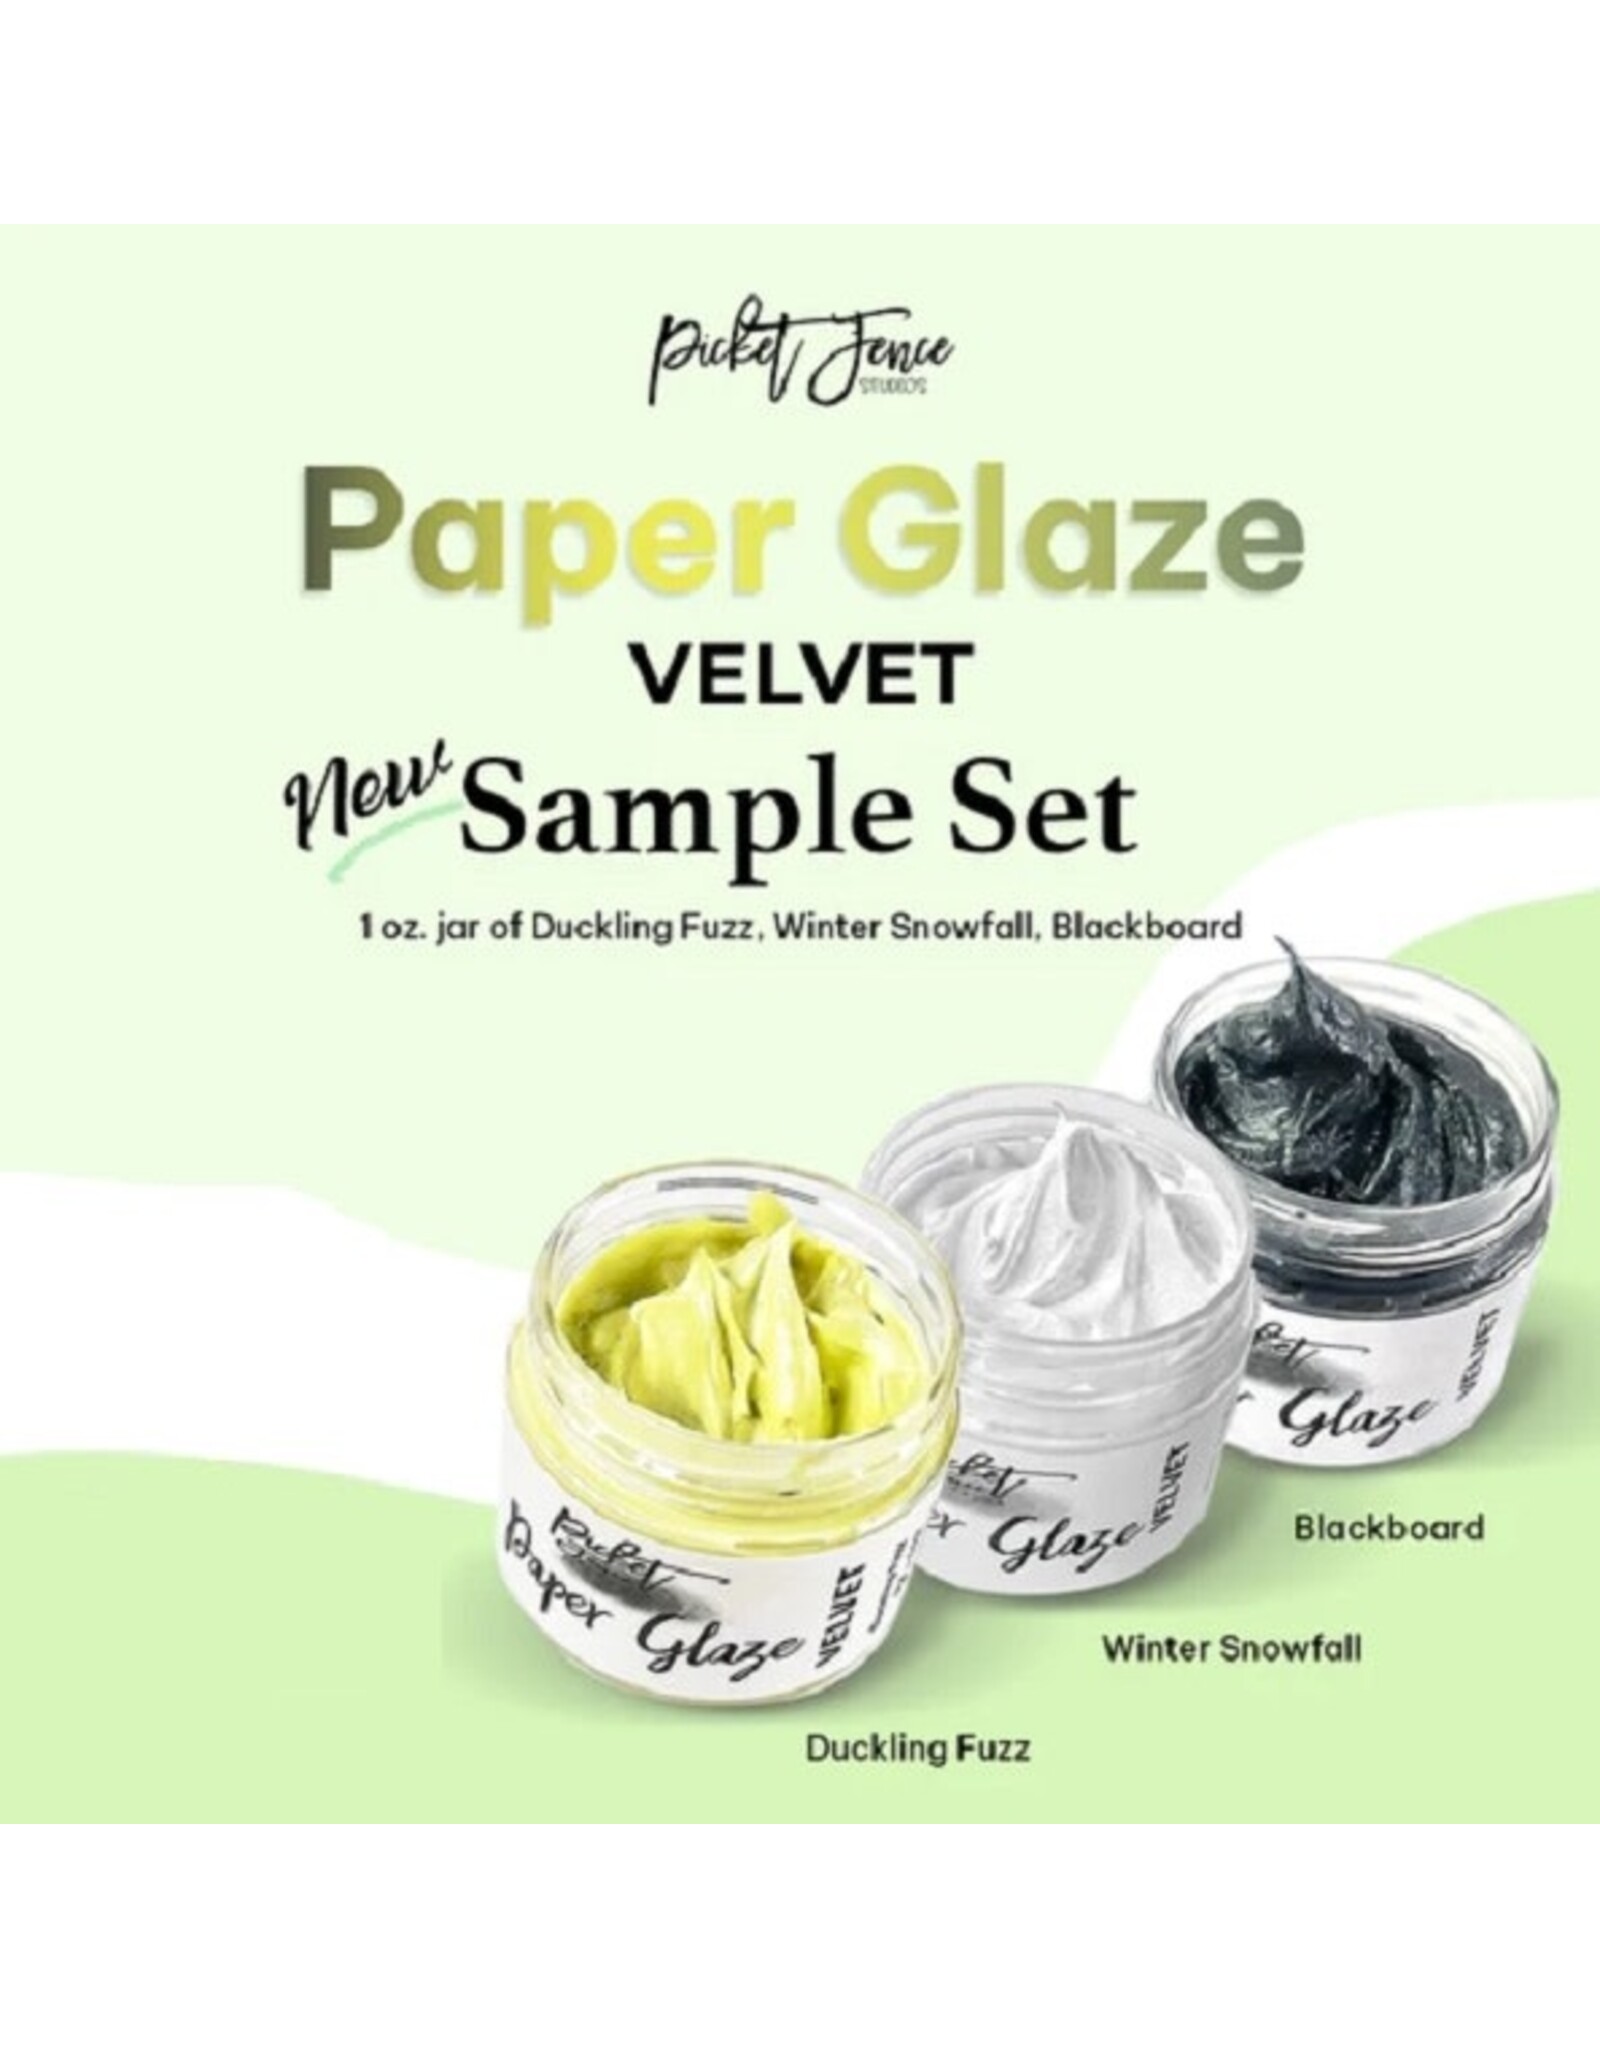 PICKET FENCE STUDIOS Paper Glaze Velvet Sampler Set